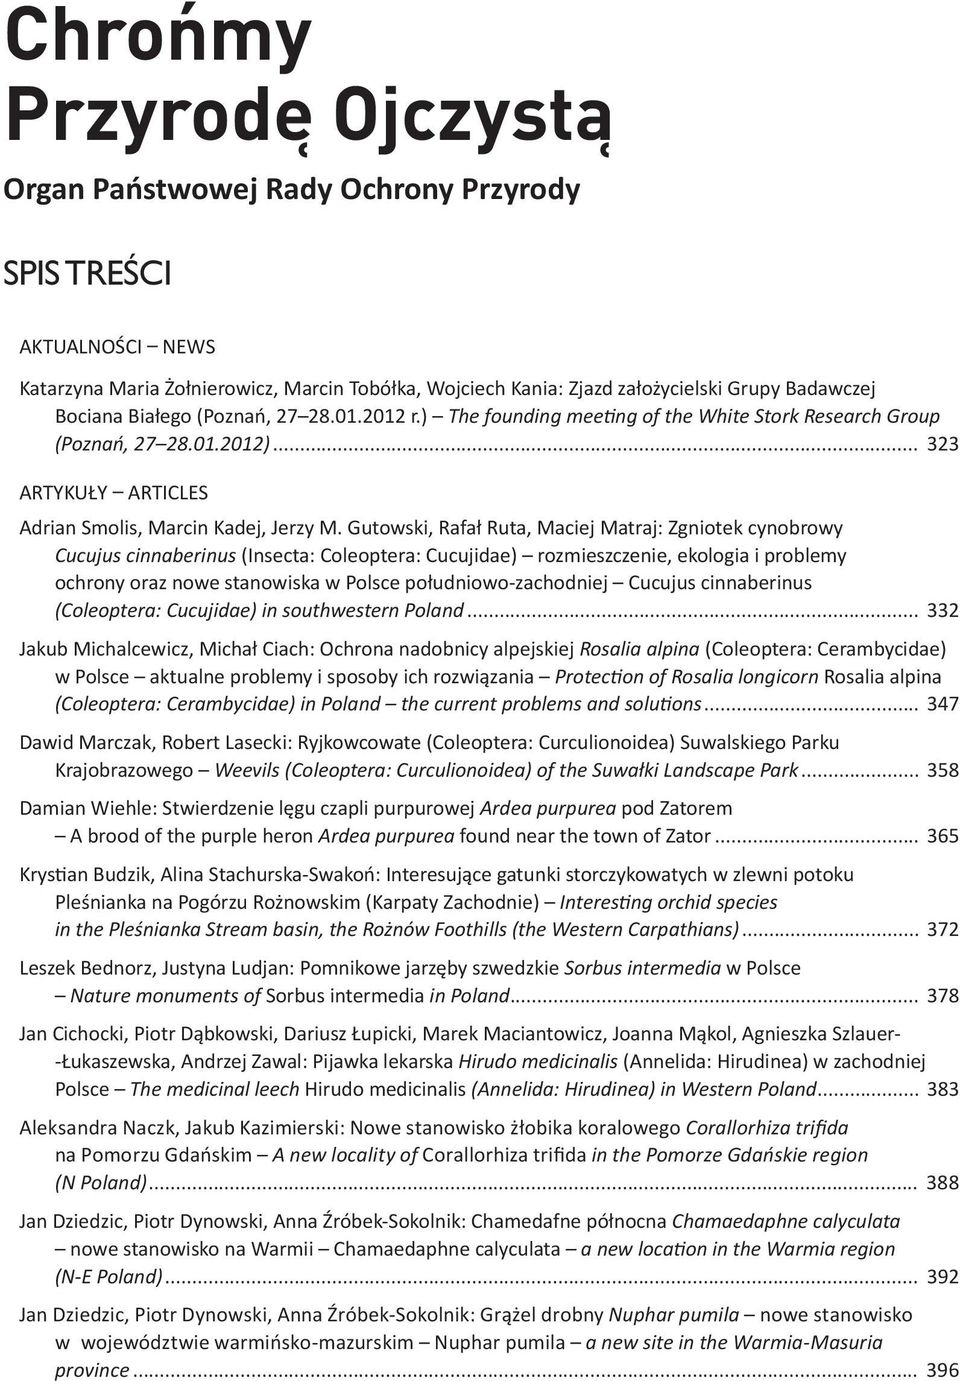 ) The siedliska founding na mee ng strukturę of the genetyczną White Stork populacji Research susła Group perełkowanego (Poznań, 27 28.01.2012) Spermophilus.